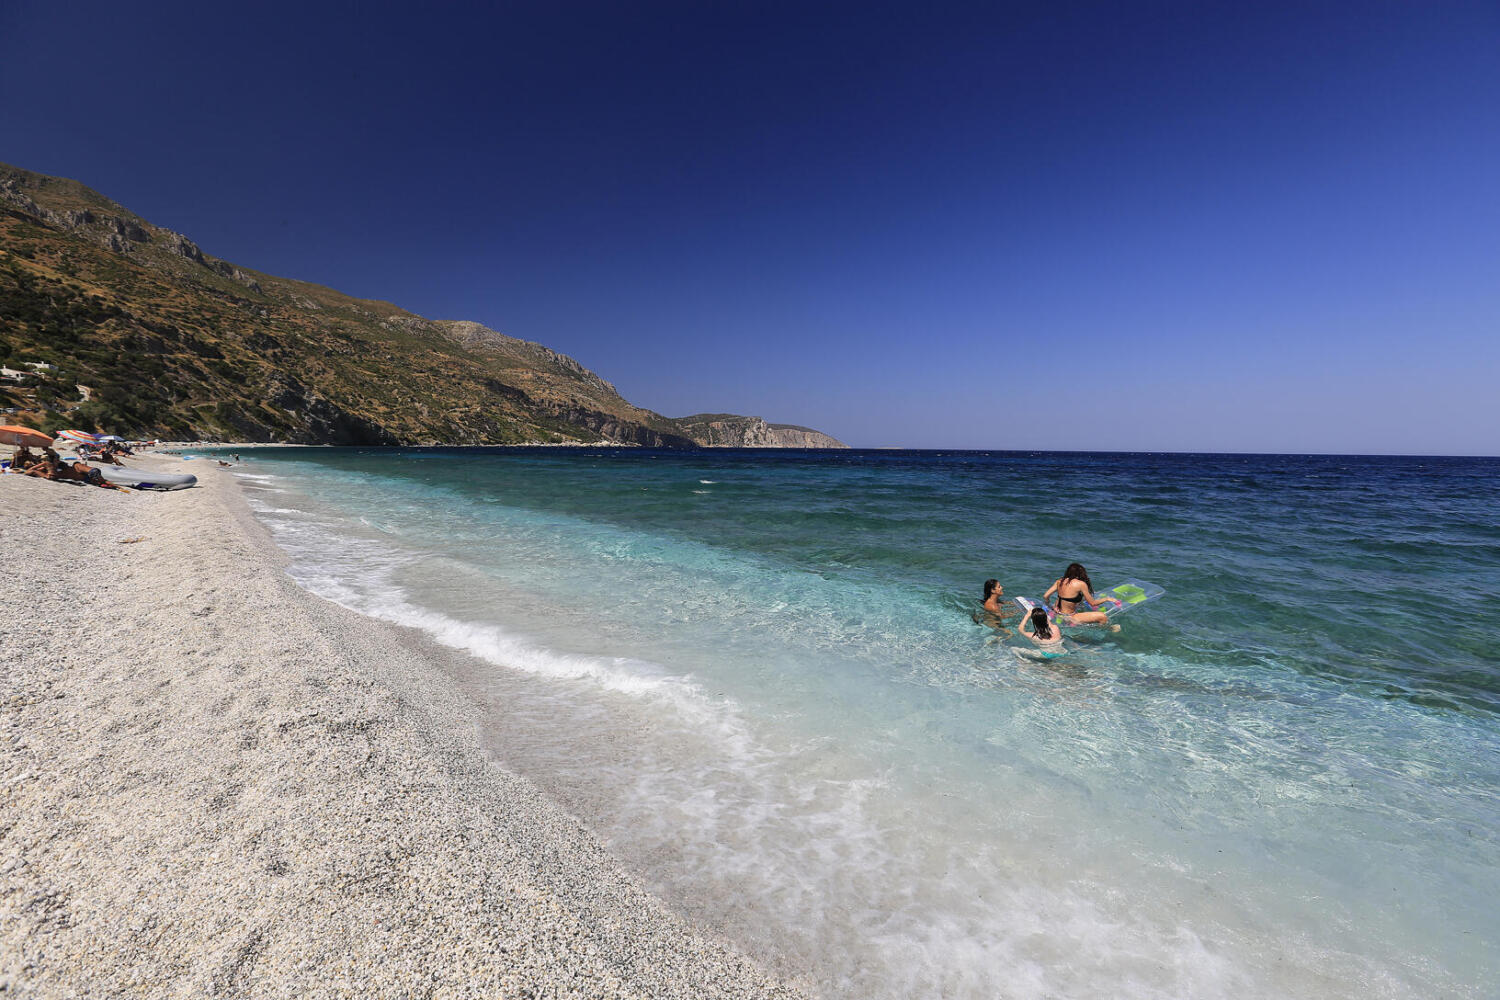 Παραλία Κορασίδα, χωριό Αχλαδερή. Φωτογραφία: ©Βασίλης Συκάς, για τον Δήμο Κύμης-Αλιβερίου